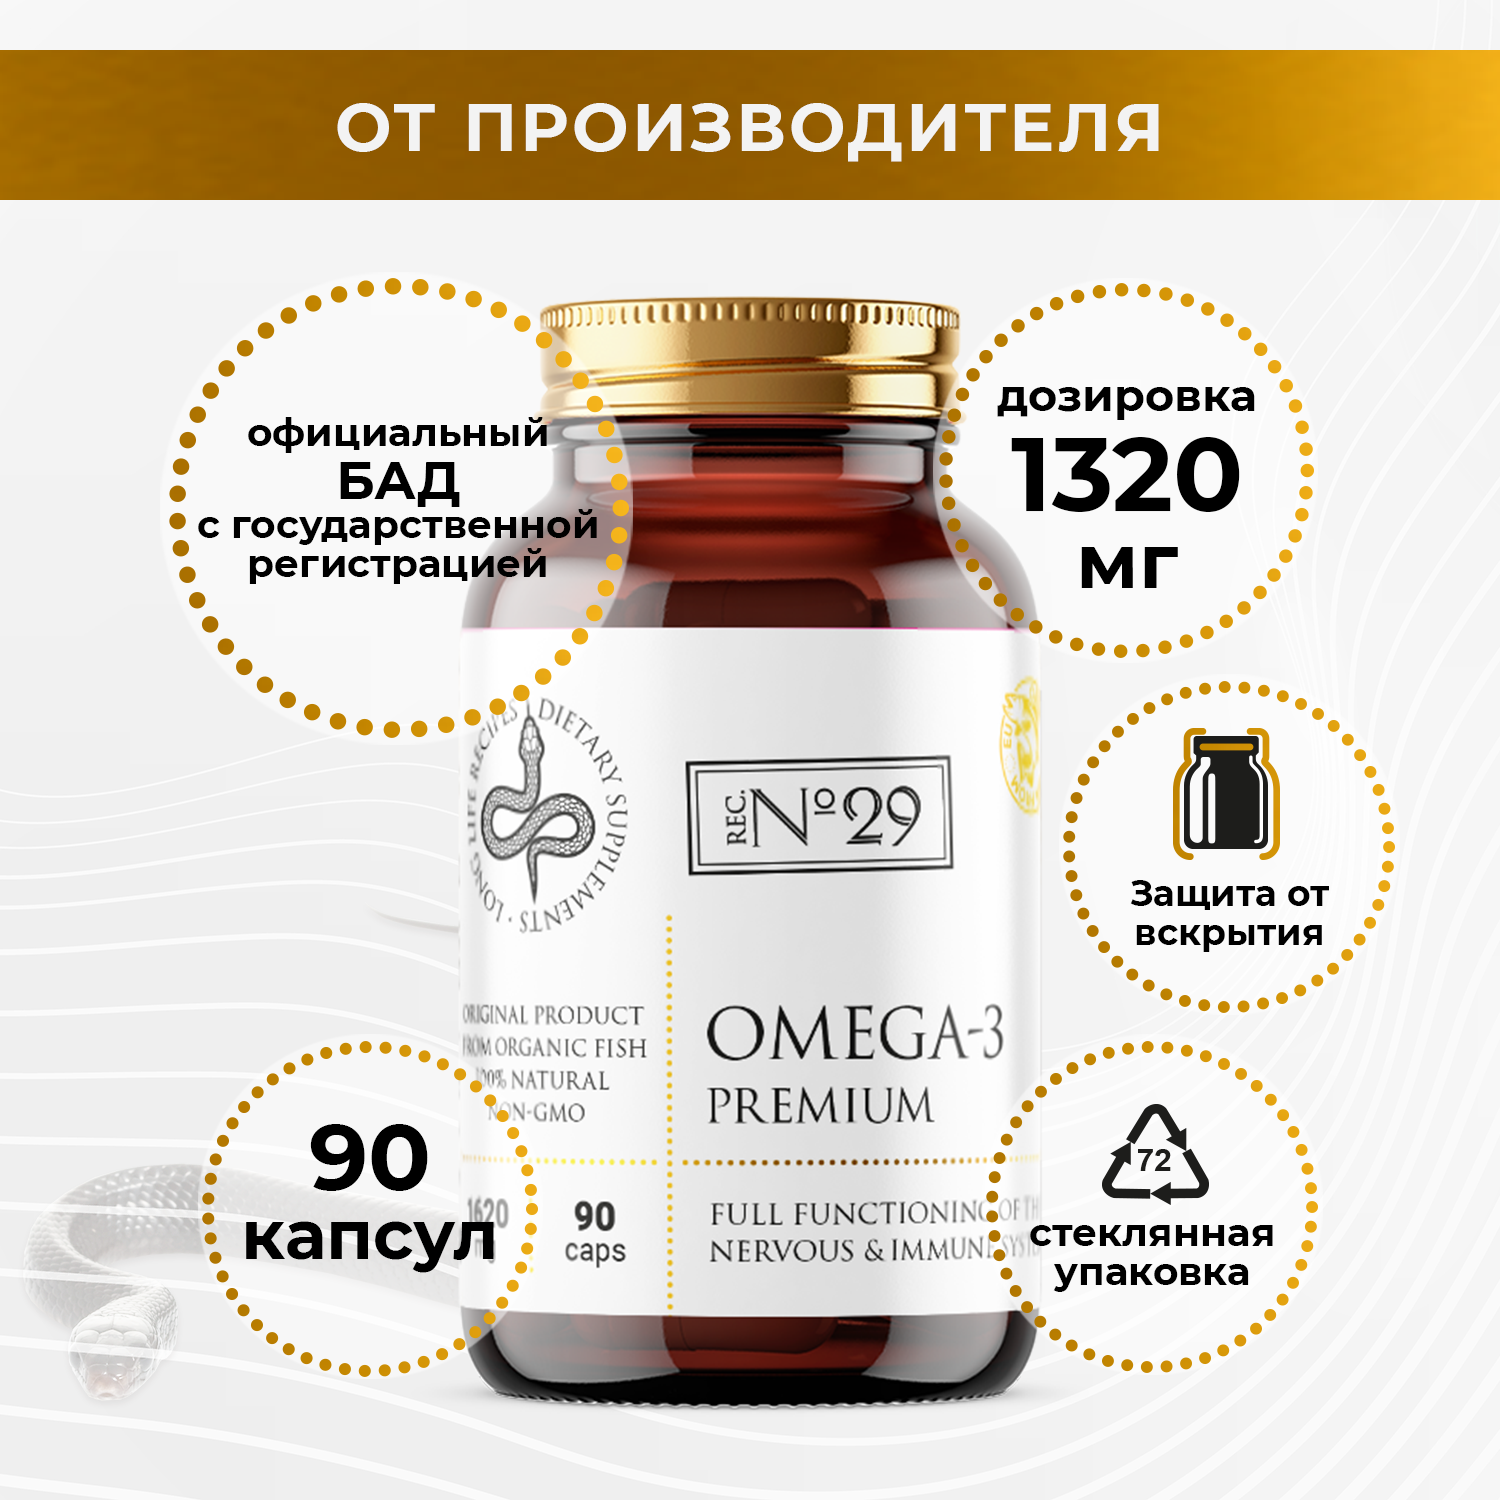 Omega-3 Premium (60) / Омега-3 Премиум / Рыбий жир высокой концентрации / Полиненасыщенные жирные кислоты (ПНЖК) ЭКП и ДКГ / БАД в стеклянной банке 60 капсул по 1620 мг